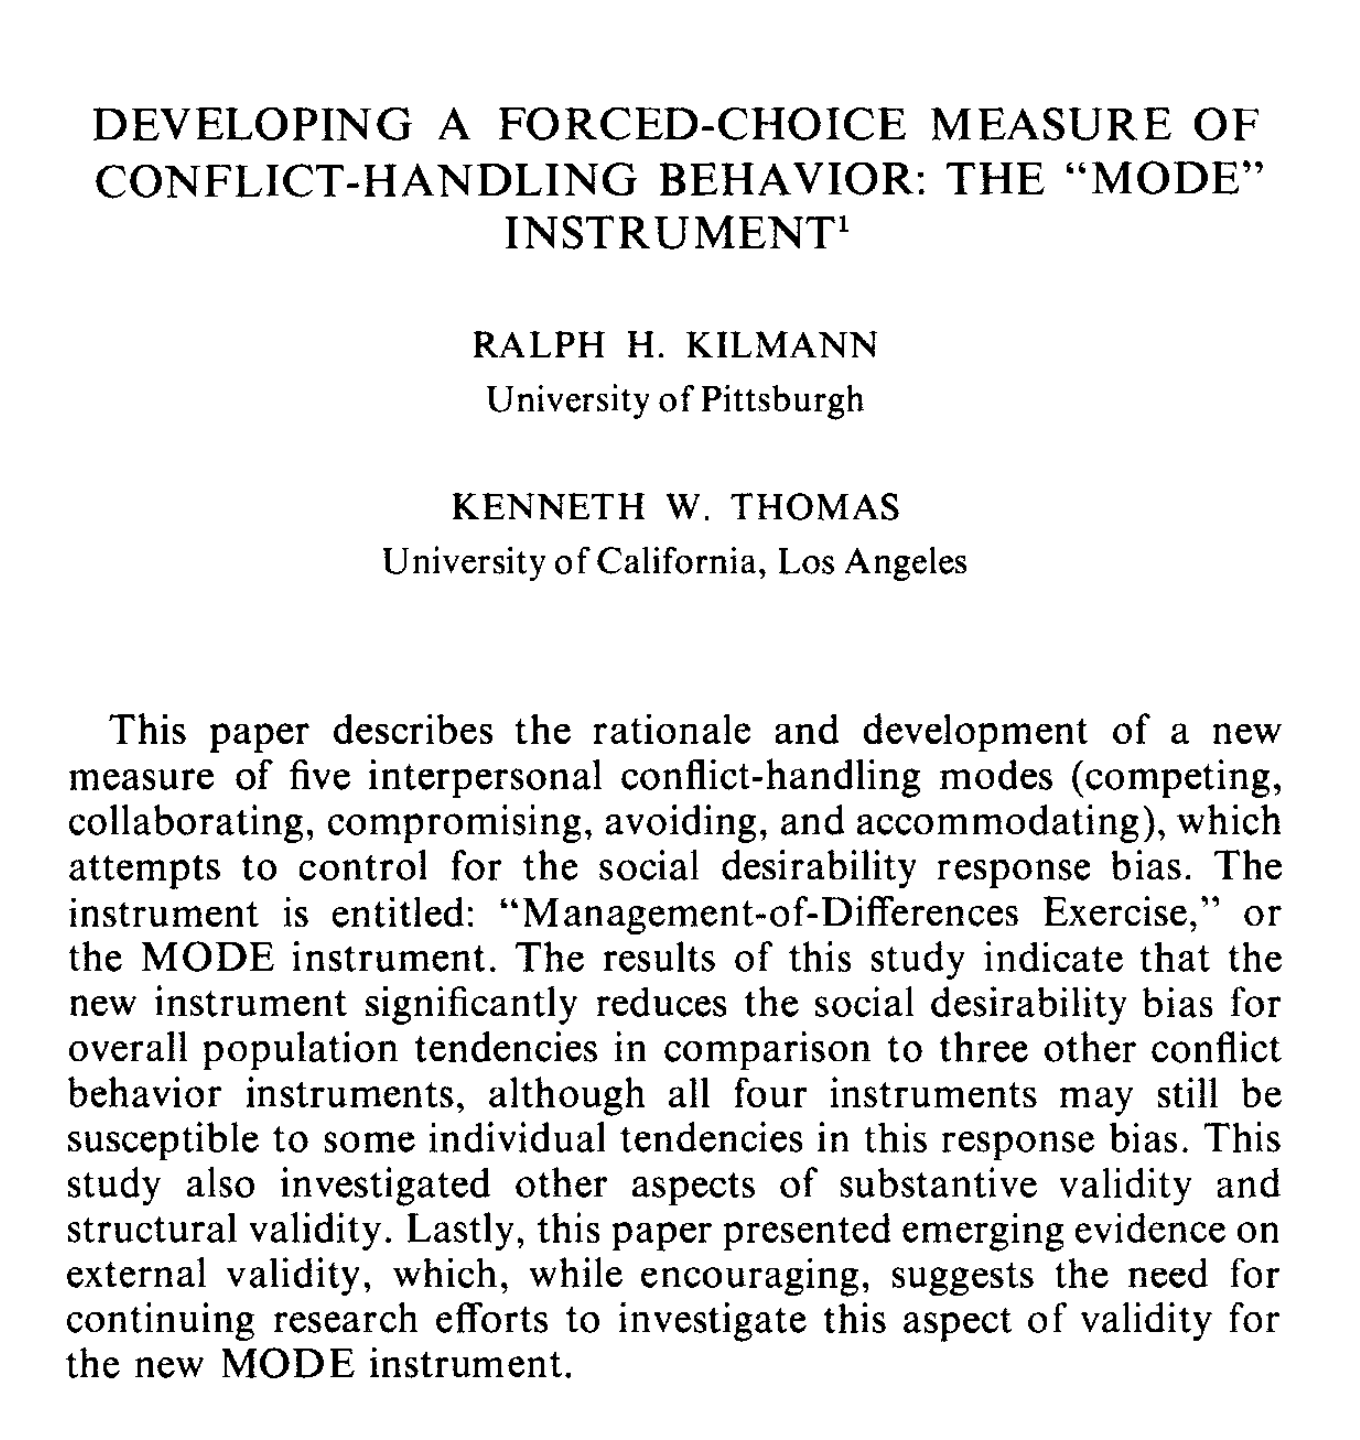 Kilmann and Thomas: The TKI Validity Study